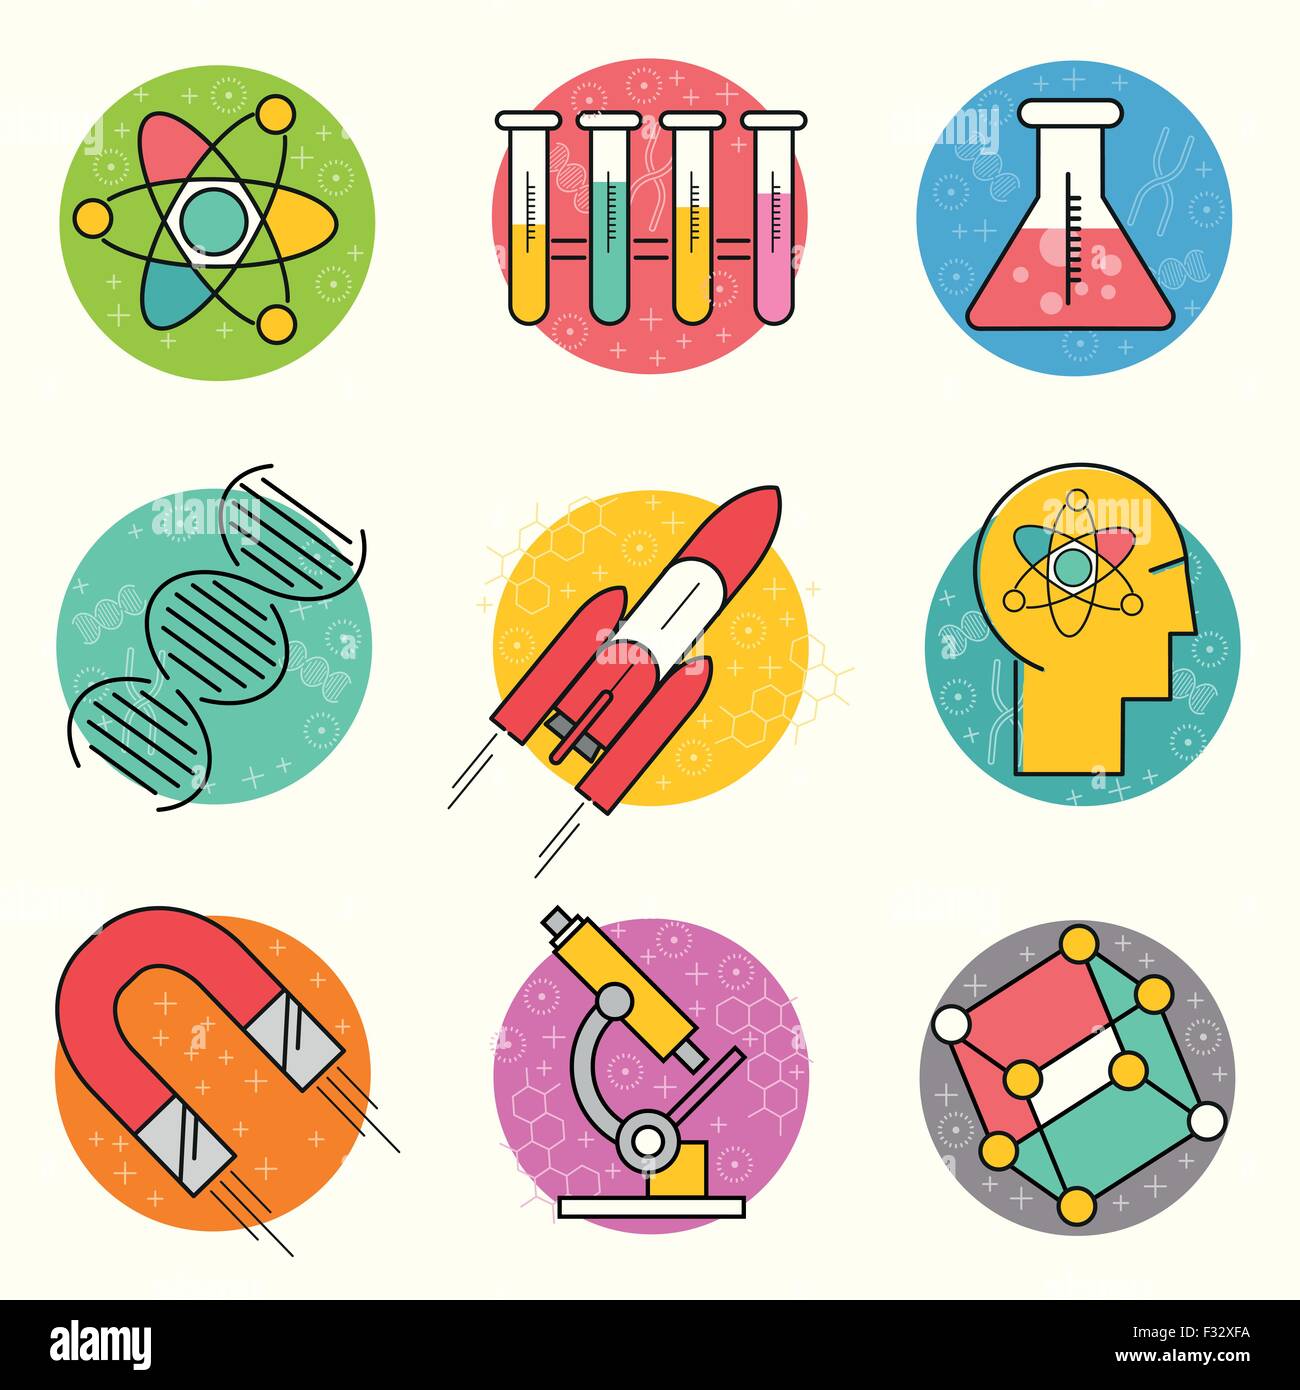 La scienza Vector Icon Set. Una collezione di oro la scienza a tema di icone di linea comprendente un atomo, simboli della chimica e delle apparecchiature. Illustrazione Vettoriale